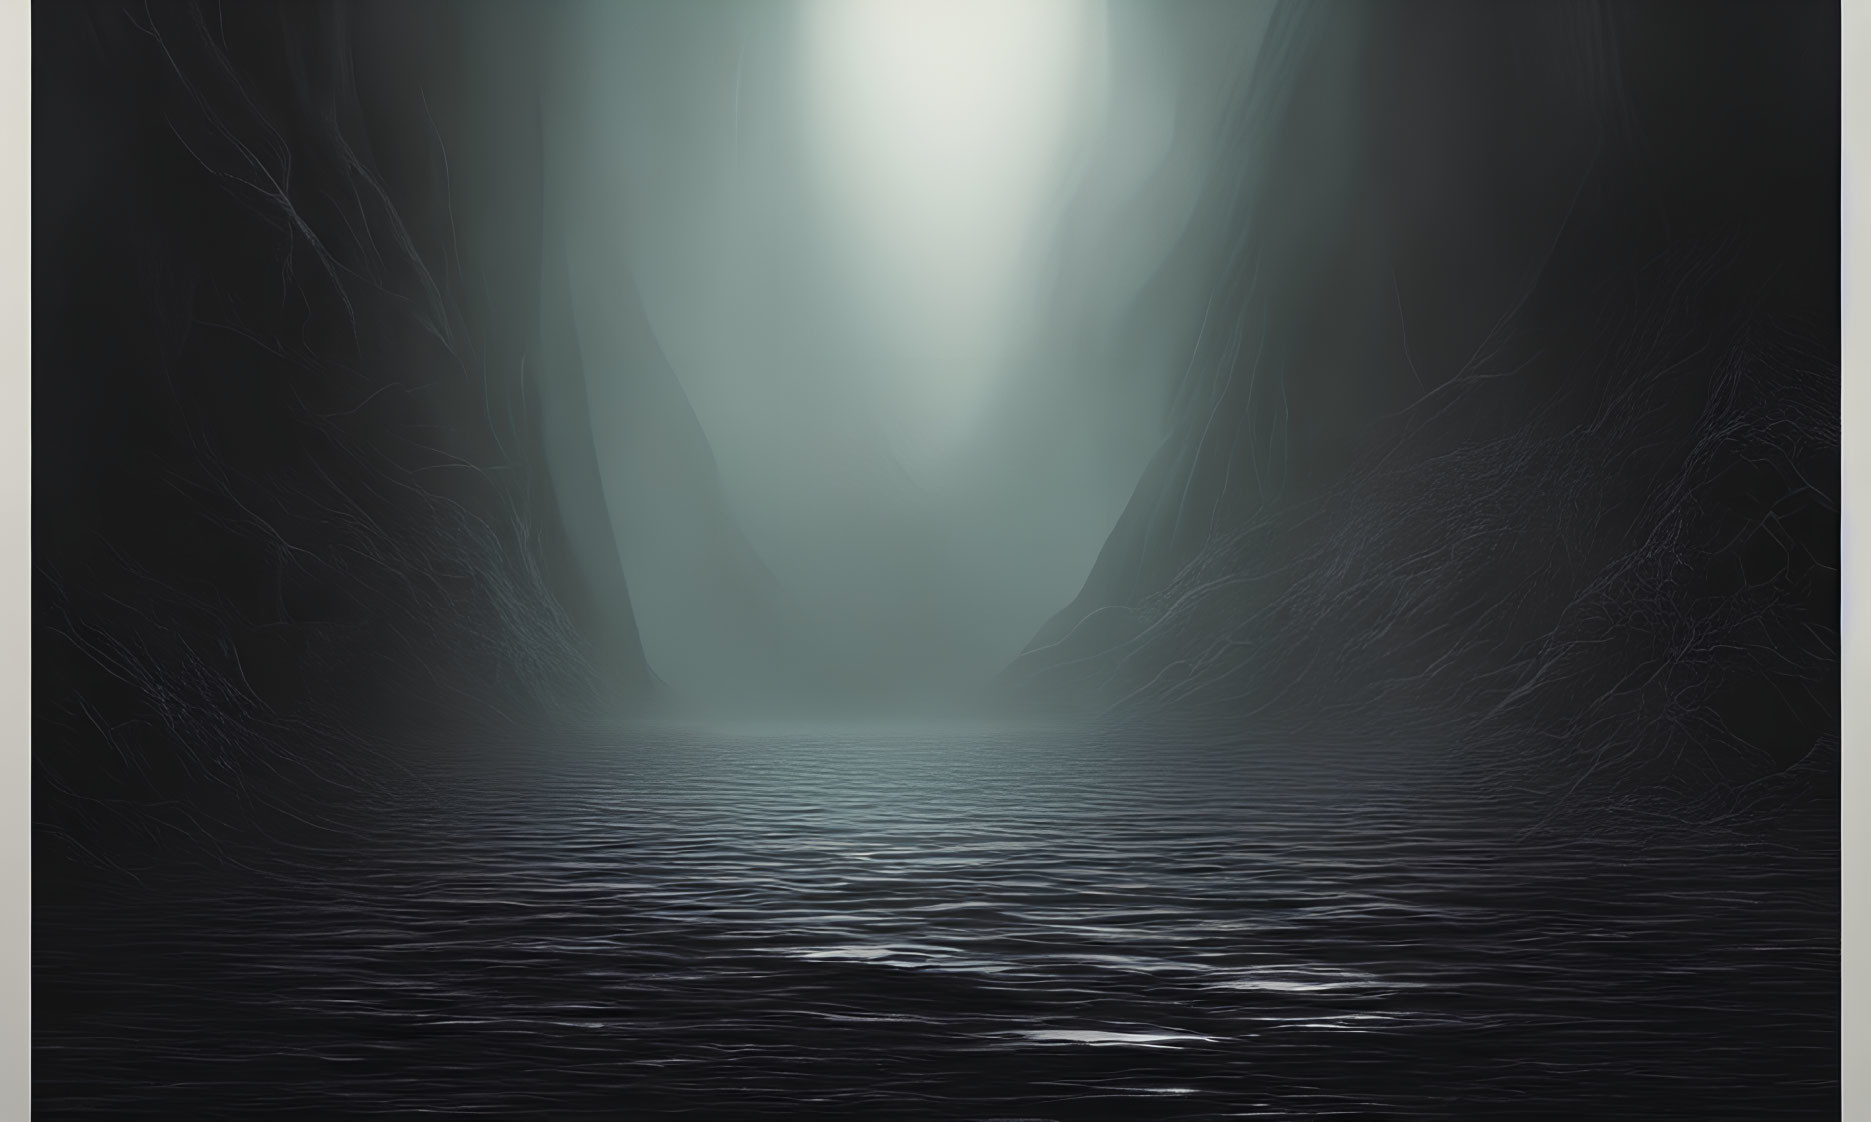 Misty cliffs and dark water in dim light